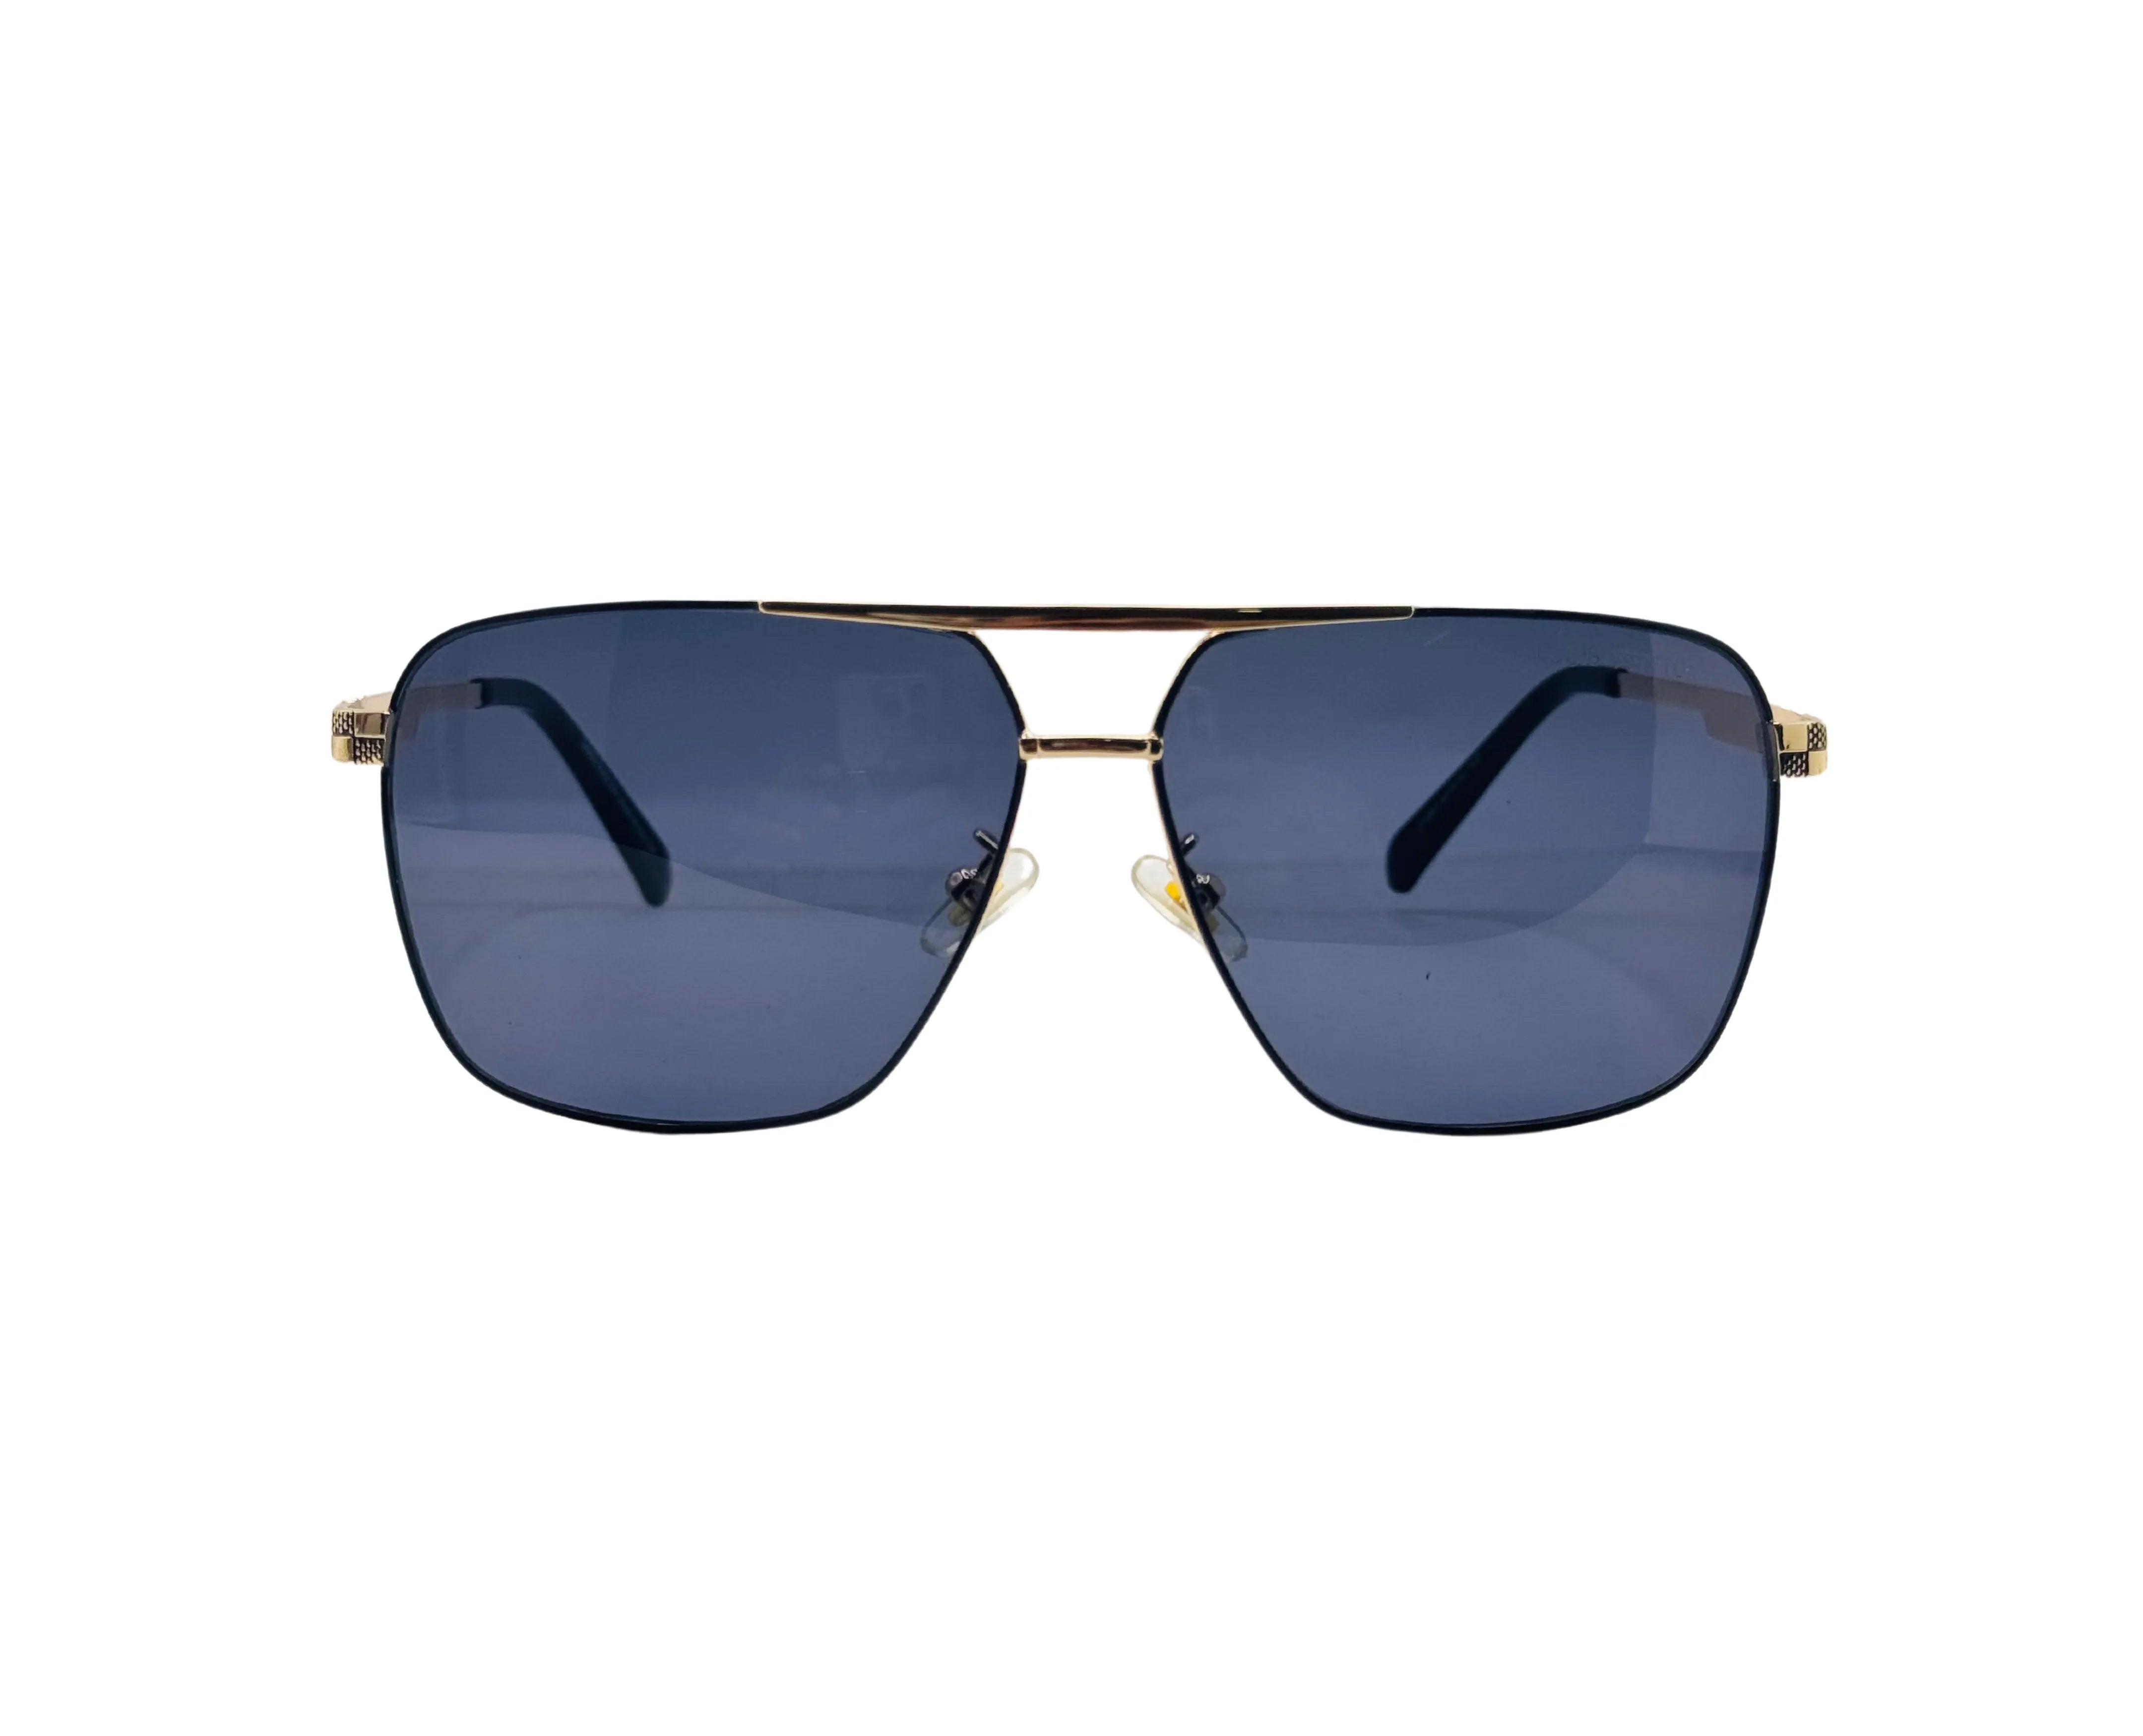 NS Deluxe - 1407 - Golden - Sunglasses